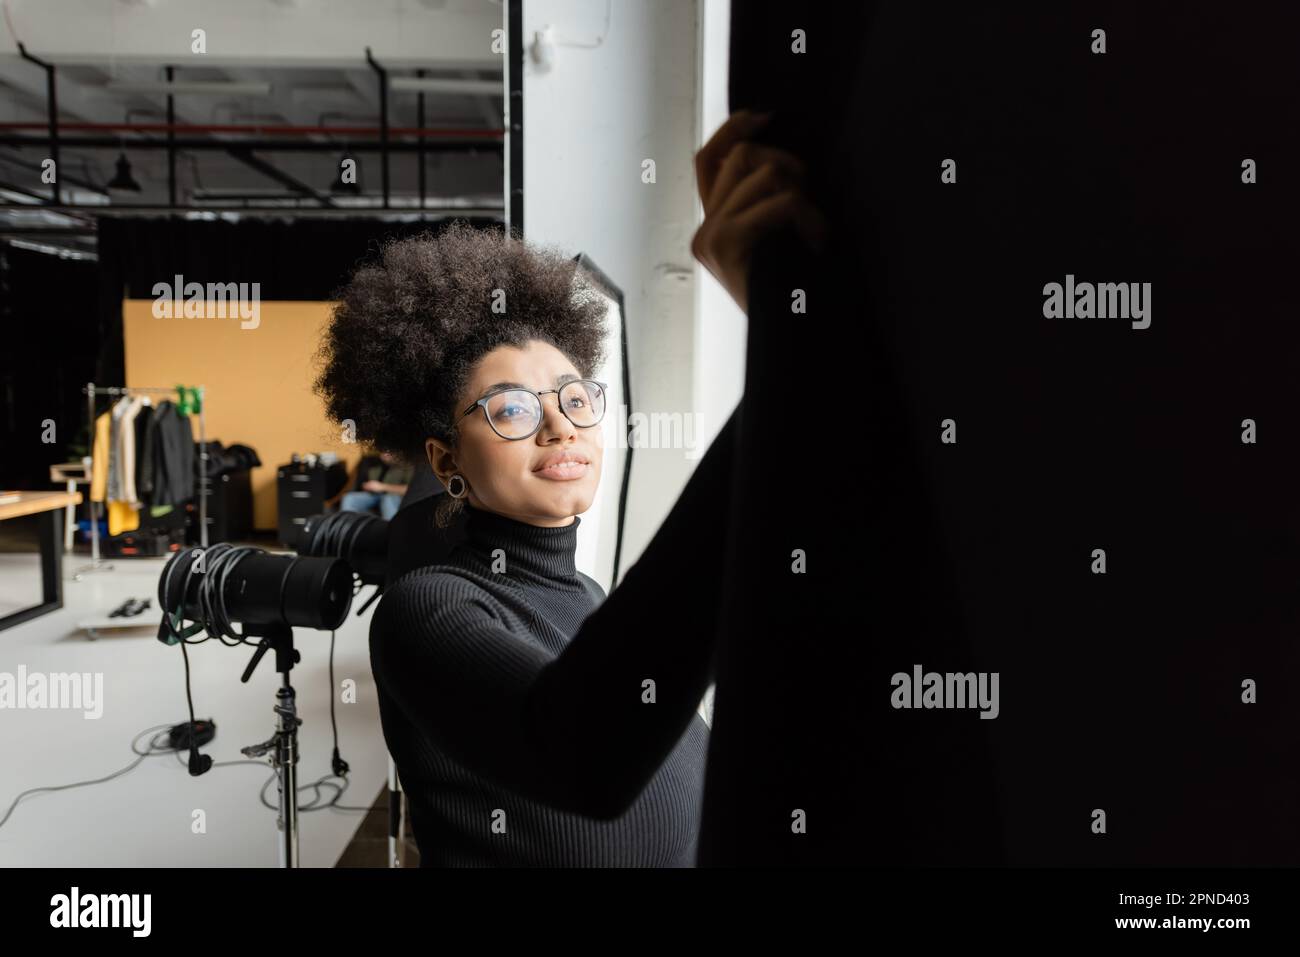 african american content maker in occhiali sorridenti vicino alla tenda nera in studio fotografico, immagine stock Foto Stock